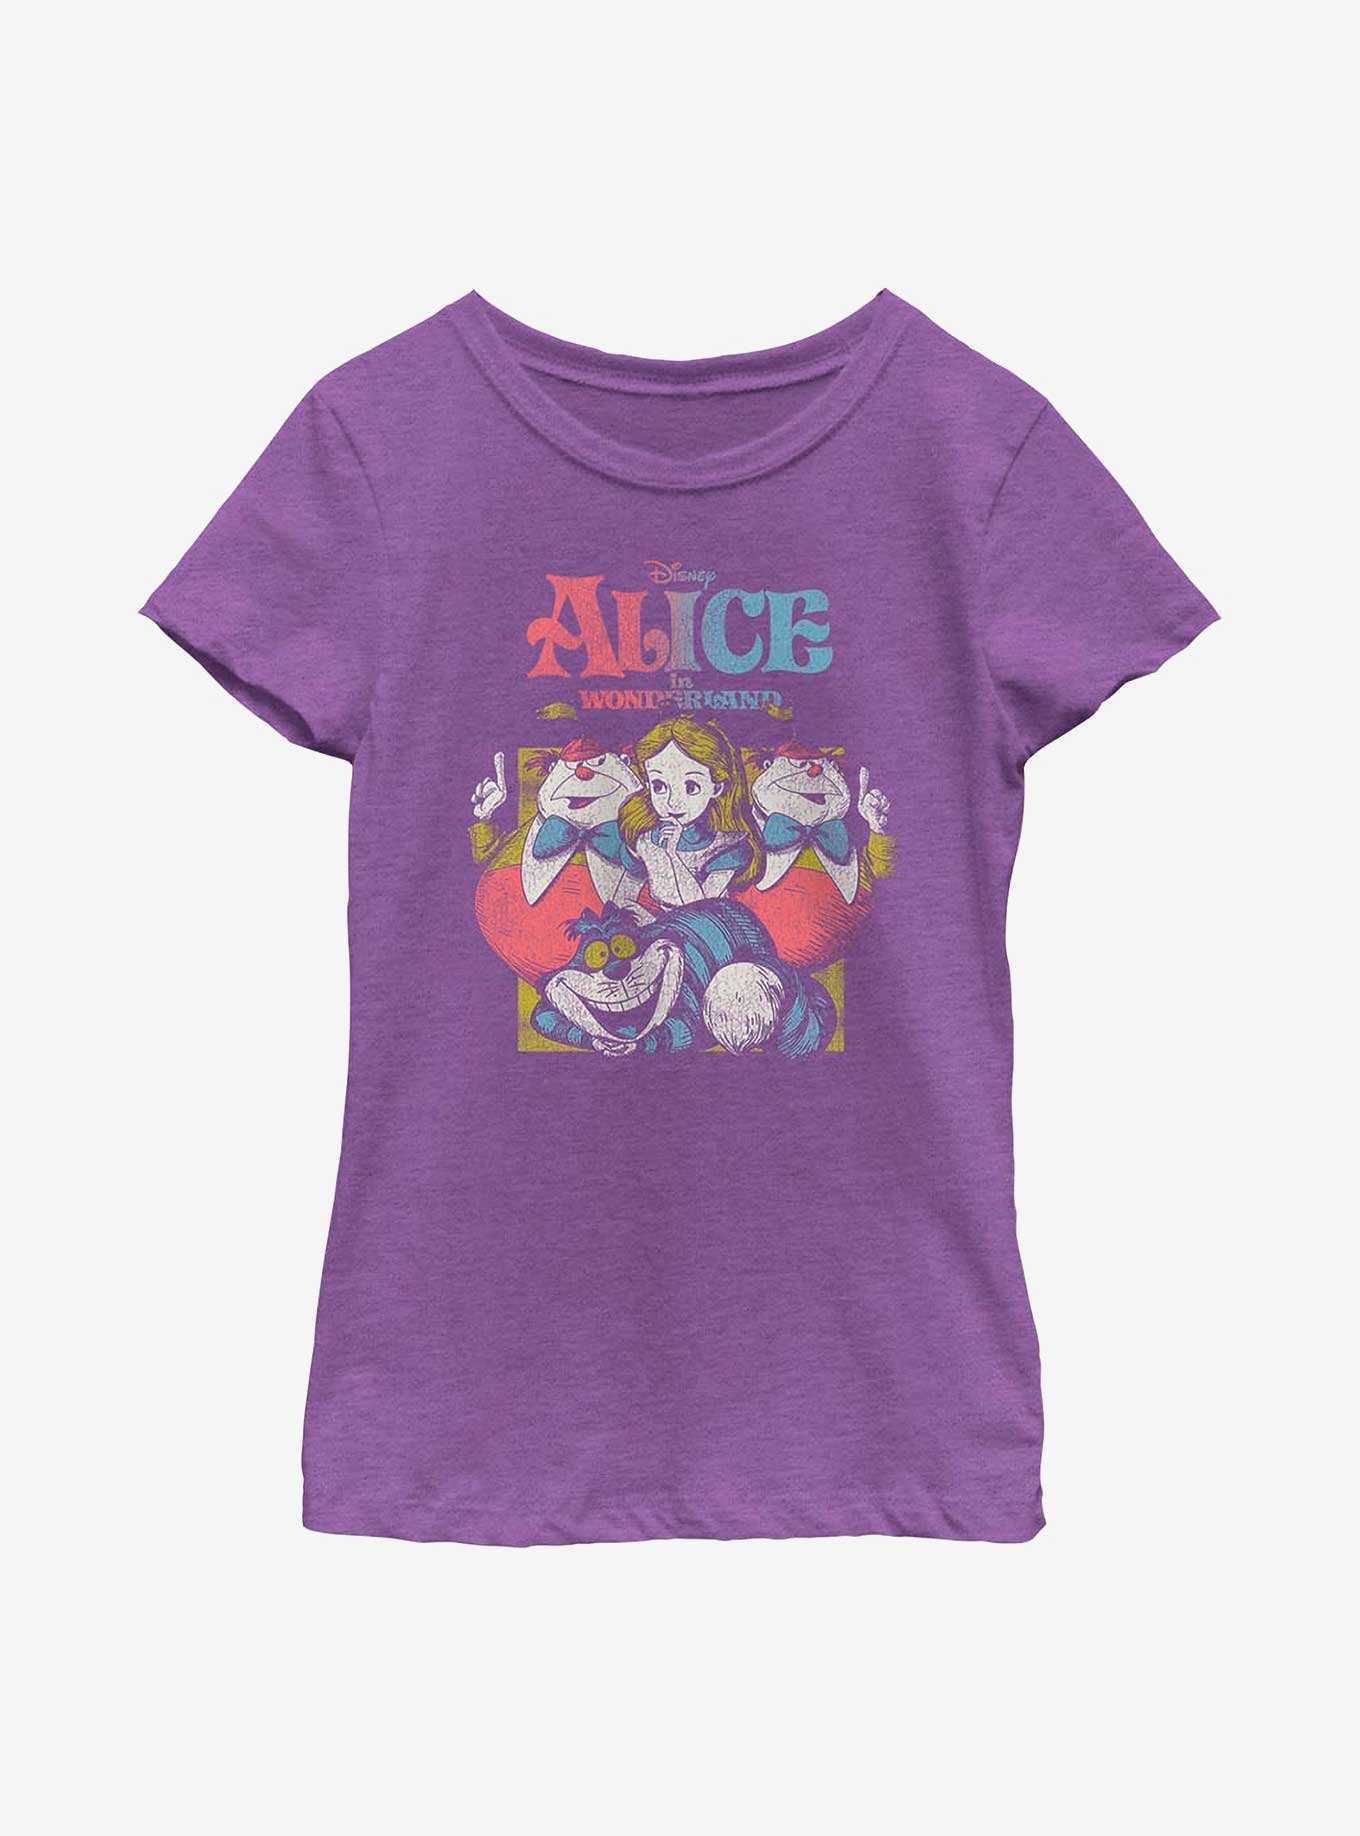 Disney Alice In Wonderland Vintage Alice Youth Girls T-Shirt, , hi-res